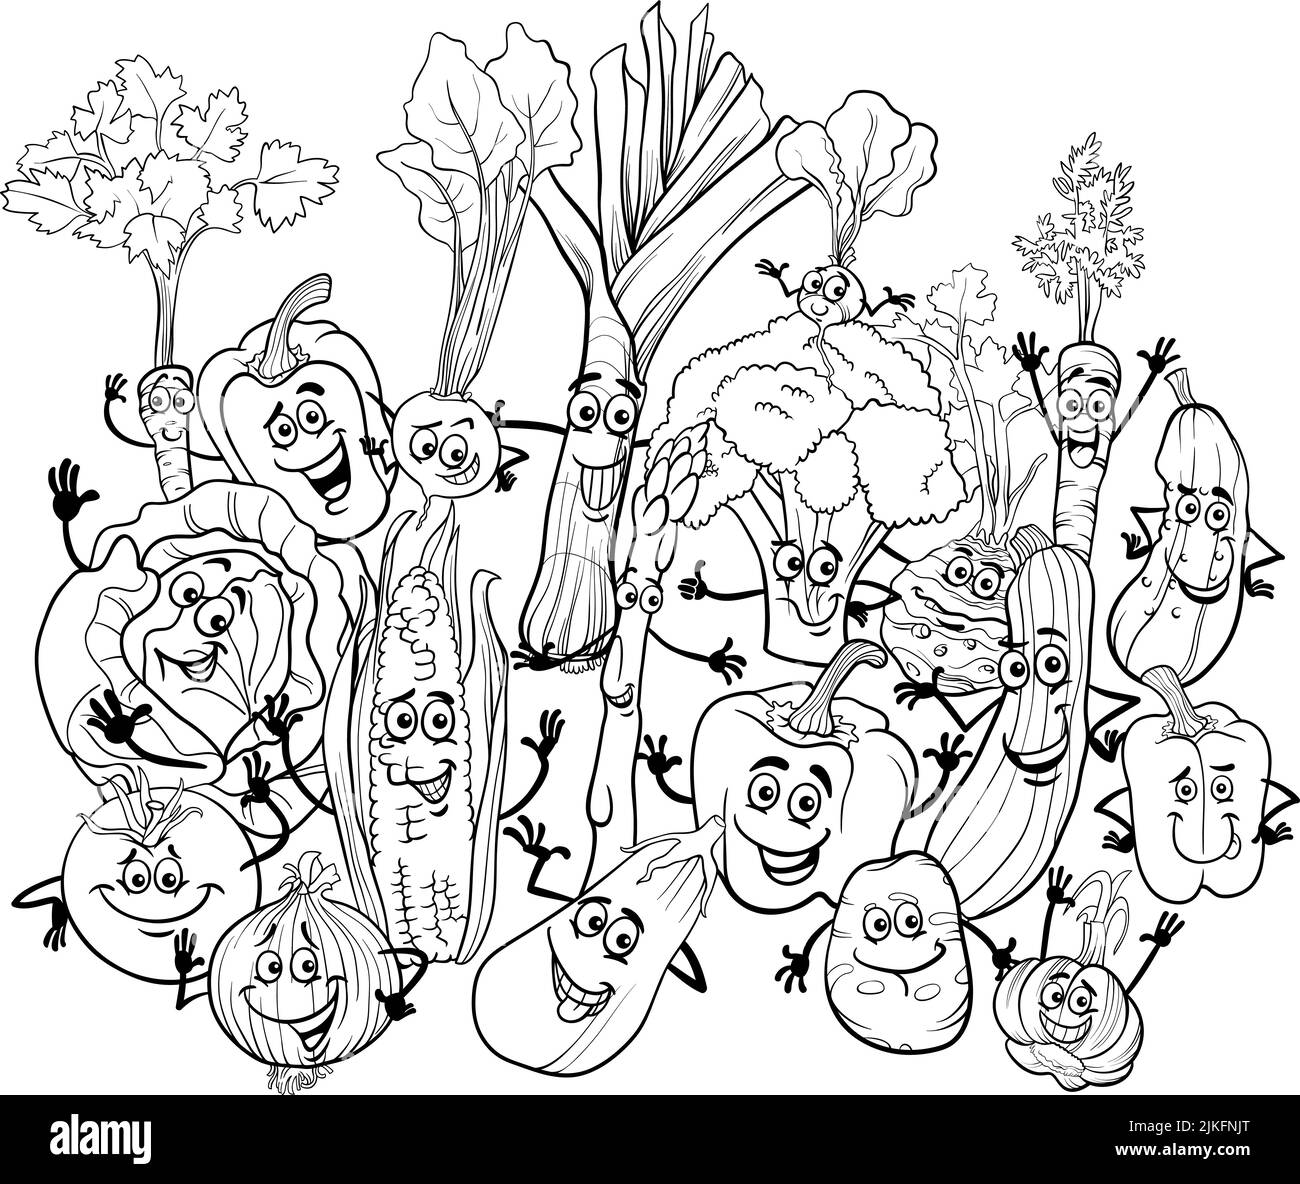 Illustrazione di fumetti in bianco e nero di divertenti fumetti di frutta pagina da colorare Illustrazione Vettoriale